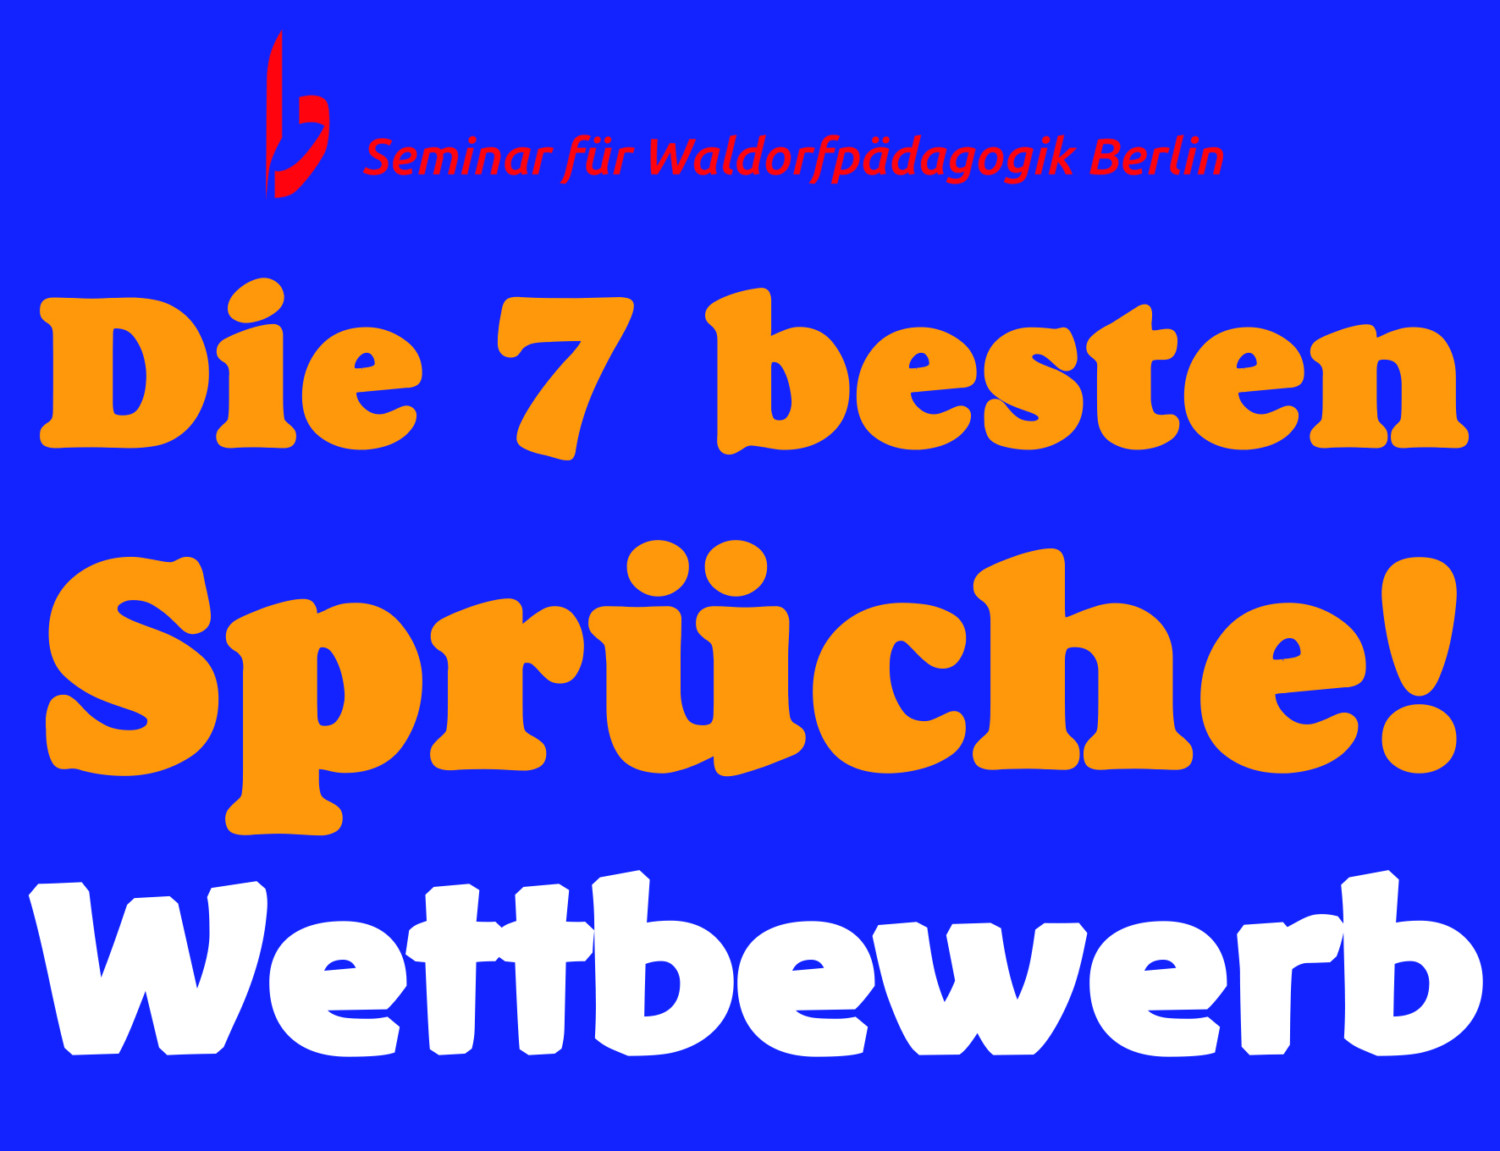 Die Sieben besten Sprüche, Wettbewerb, Seminar für Waldorfpädagogik Berlin